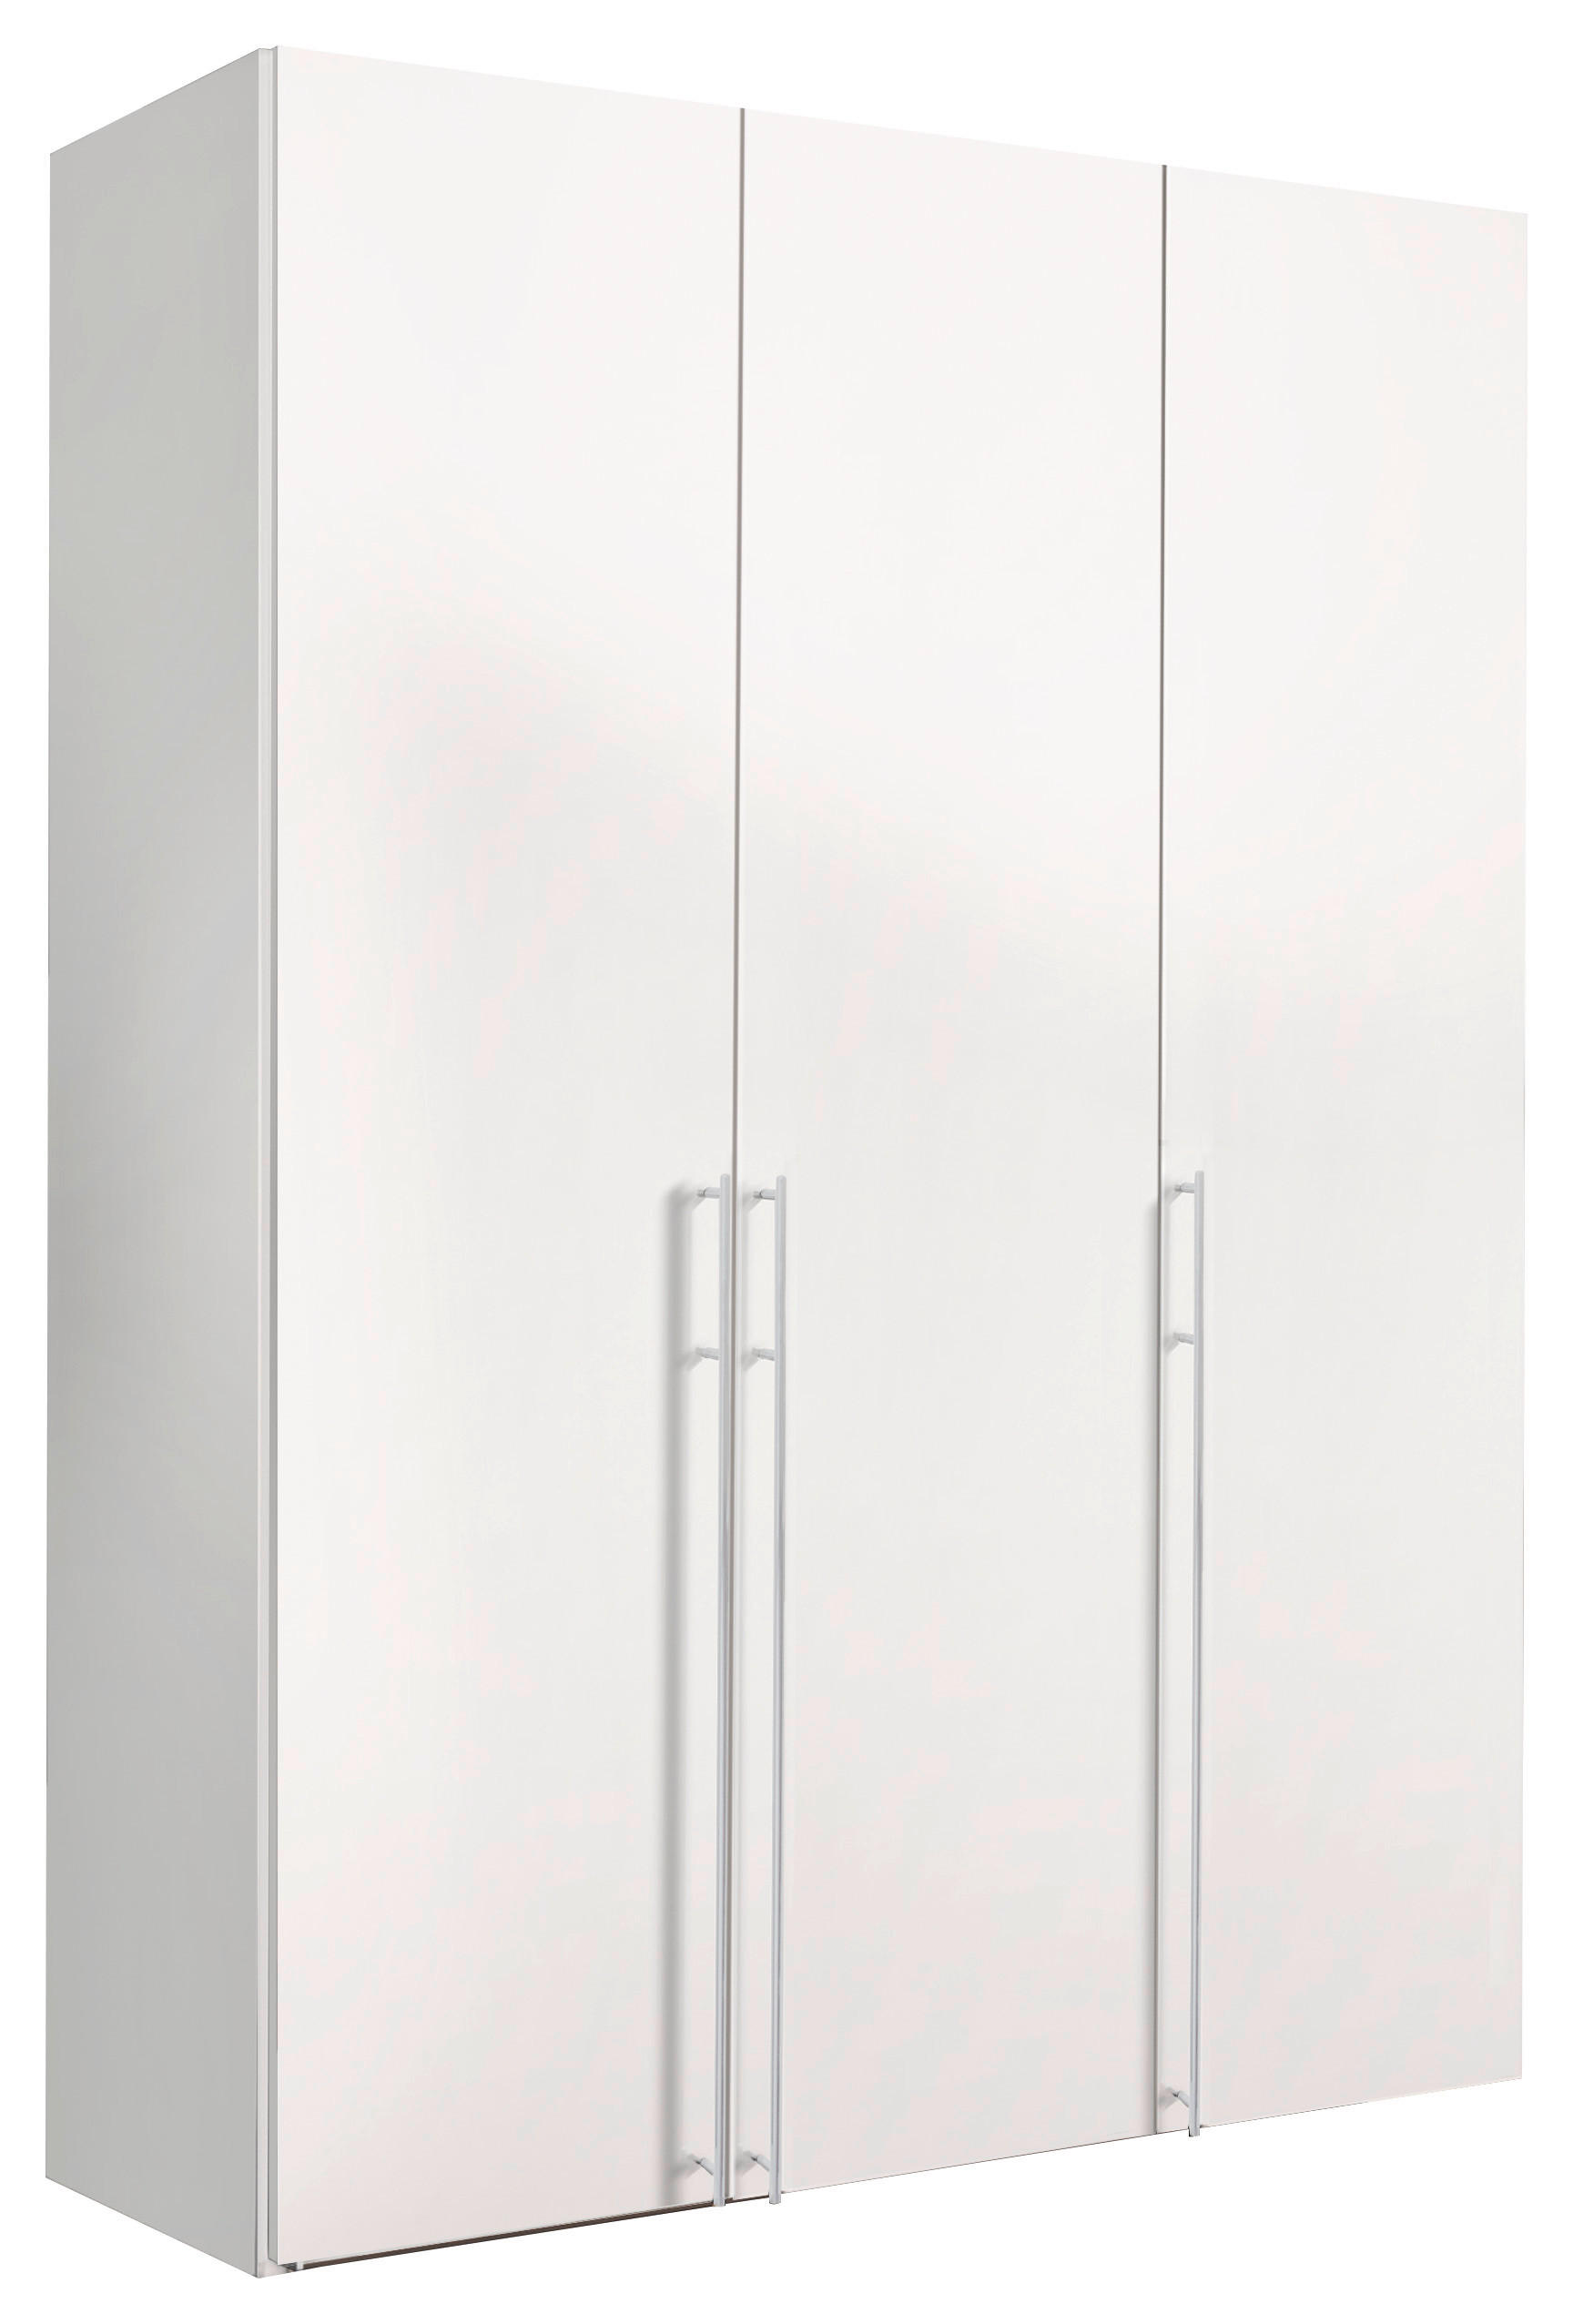 DREHTÜRENSCHRANK 3-türig Weiß  - Alufarben/Weiß, Design, Holzwerkstoff/Metall (150/236/58cm) - Hom`in